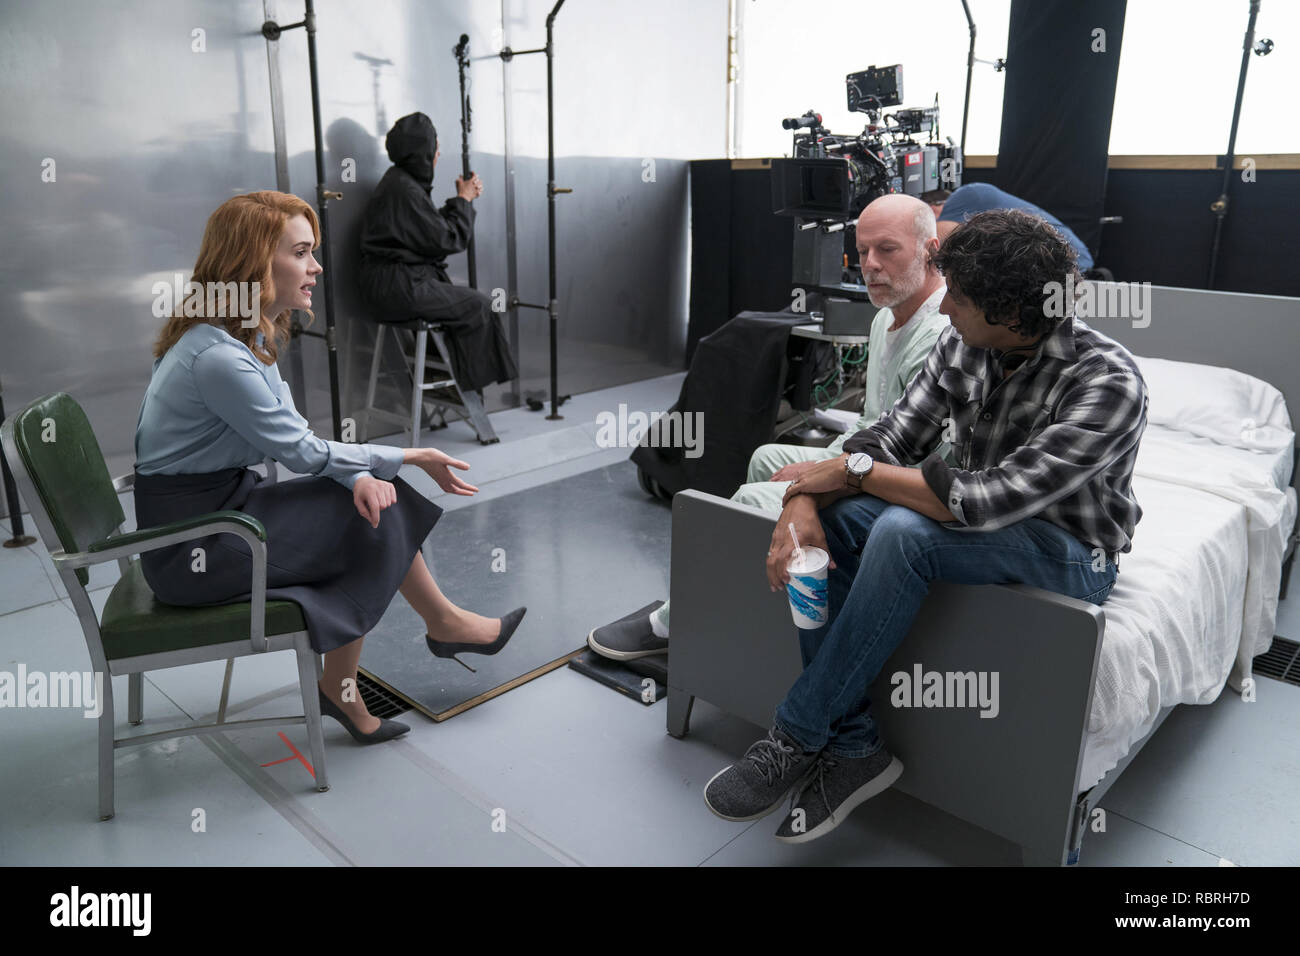 (Desde la izquierda), Sarah Paulson, quien juega El Dr. Ellie grapado, Bruce Willis, quien interpreta a David Dunn/El supervisor, y el escritor-director M. Night Shyamalan durante el rodaje de 'Cristal.'el crédito de la Foto: Universal Pictures / Hollywood Archive Foto de stock